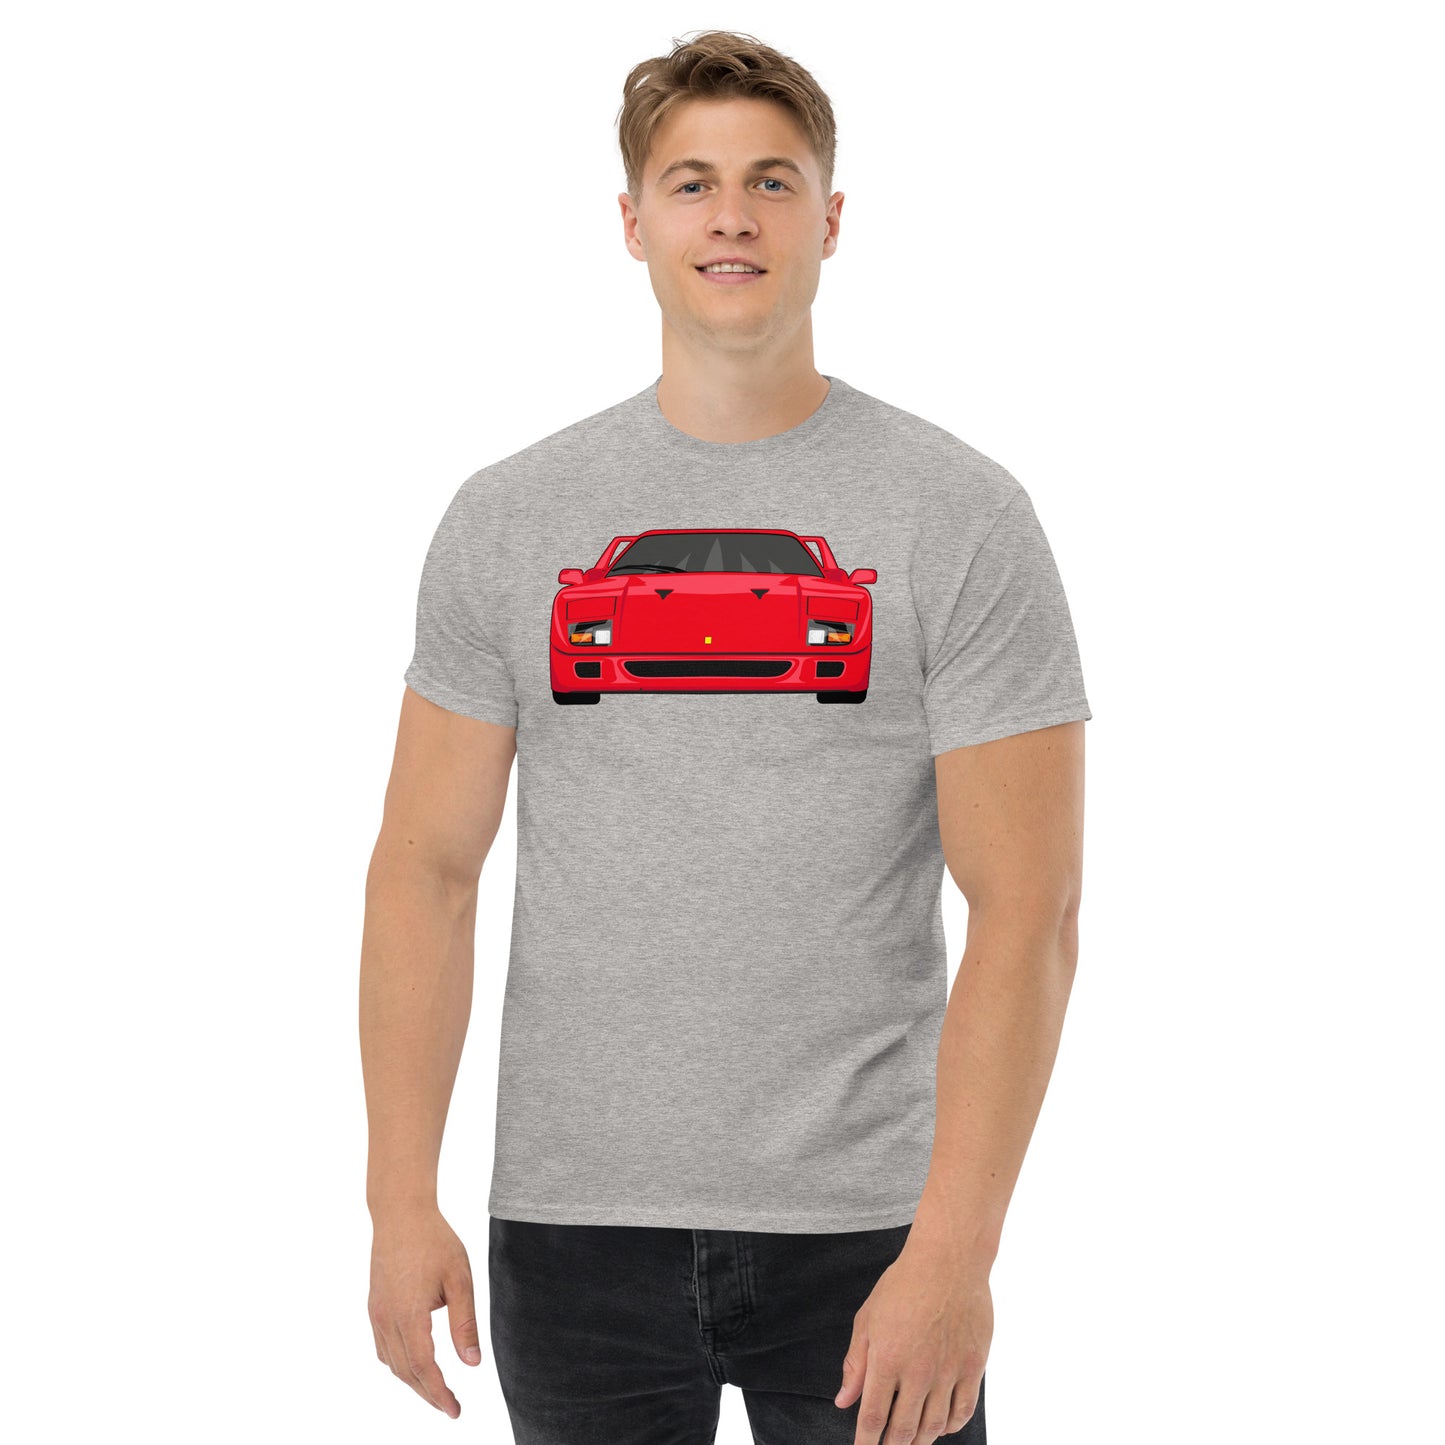 Camiseta unisex Ferrari F40 "Garage Days" 1 of 100